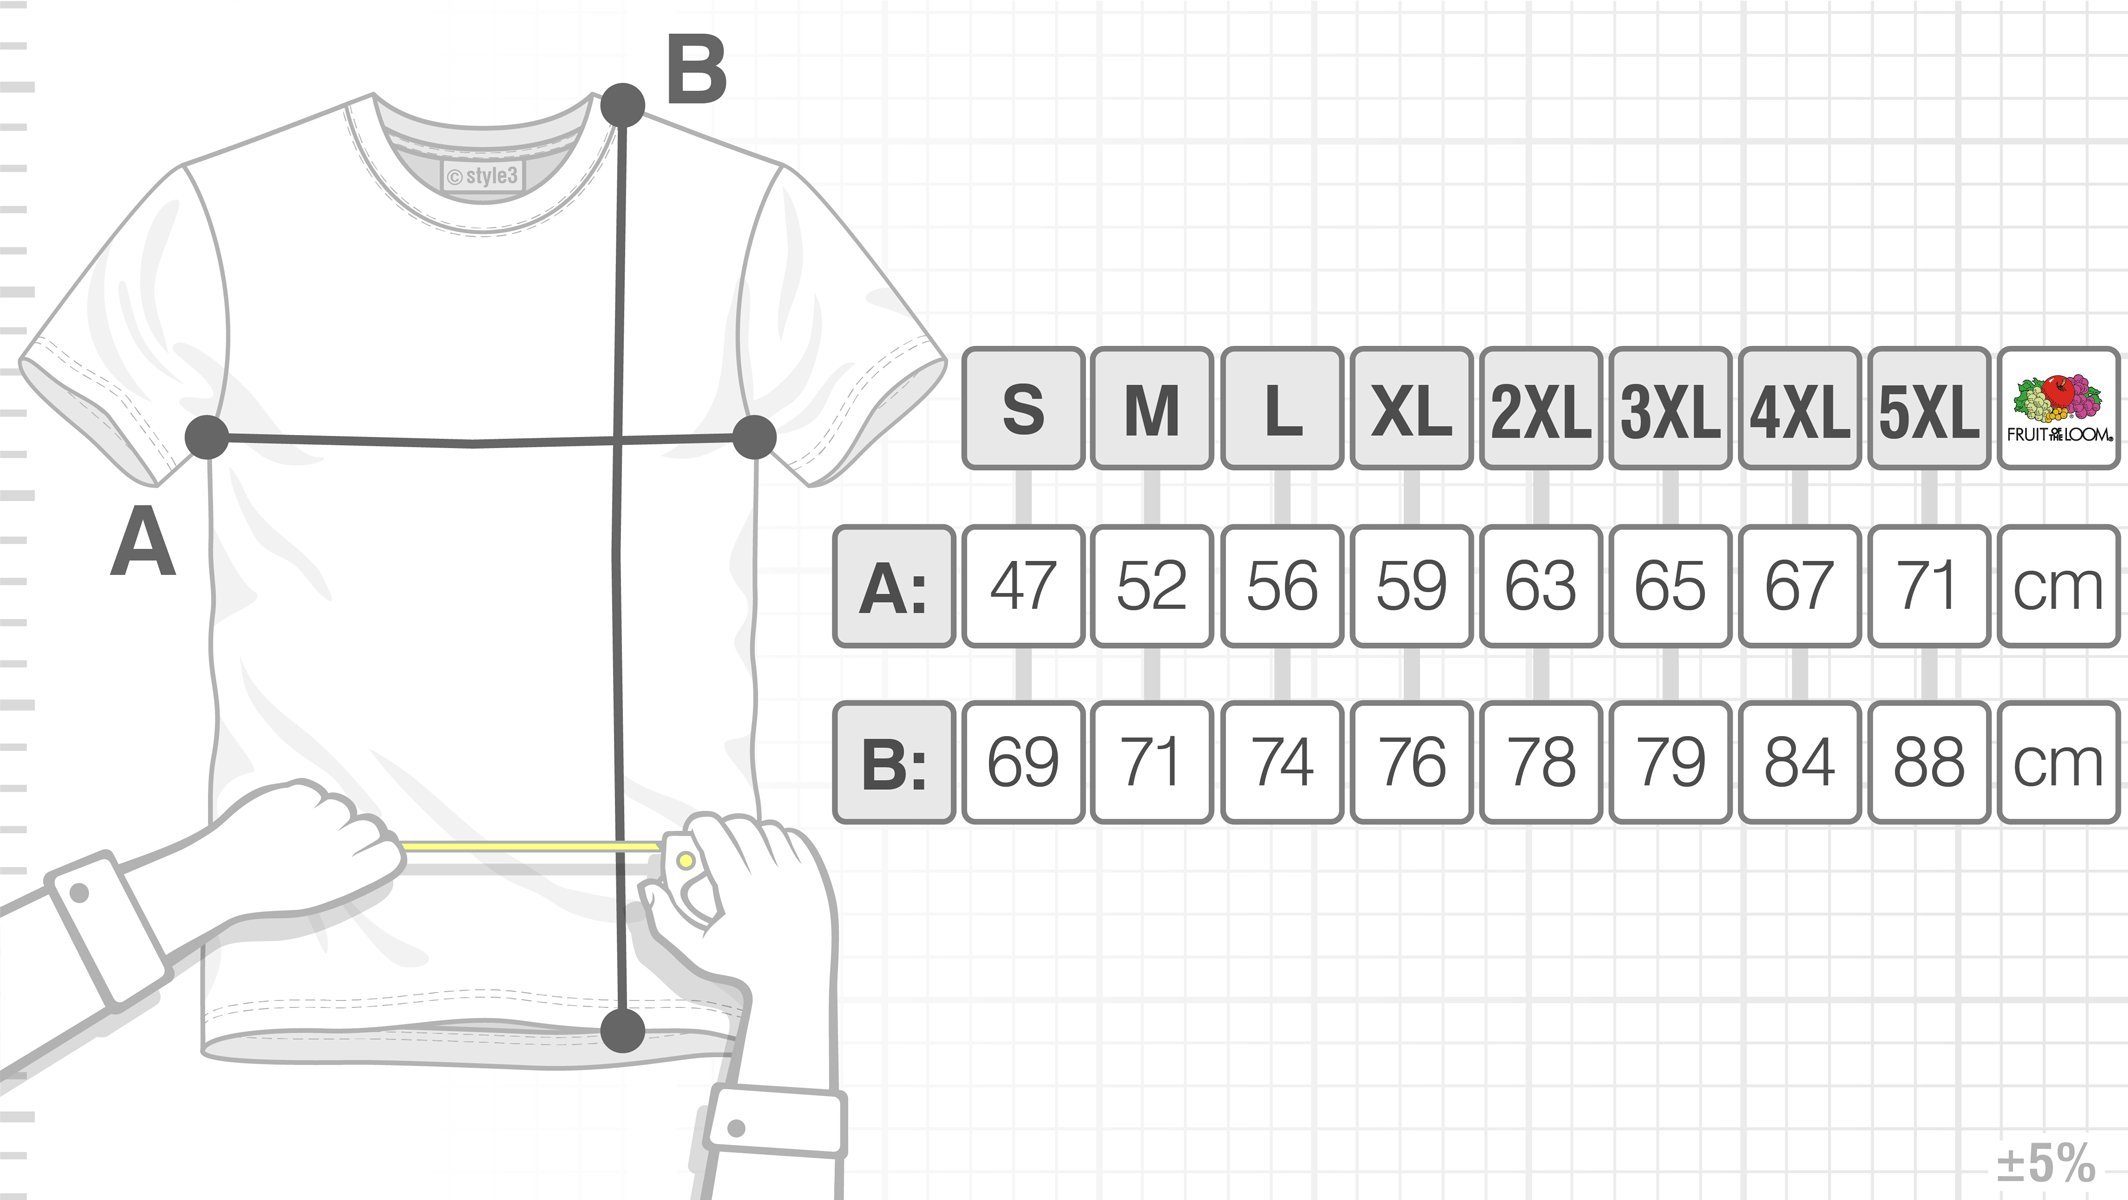 würfel bang Big Herren style3 Sheldon Theory gelb Dreieck Cooper Penrose Cube Escher T-Shirt Print-Shirt